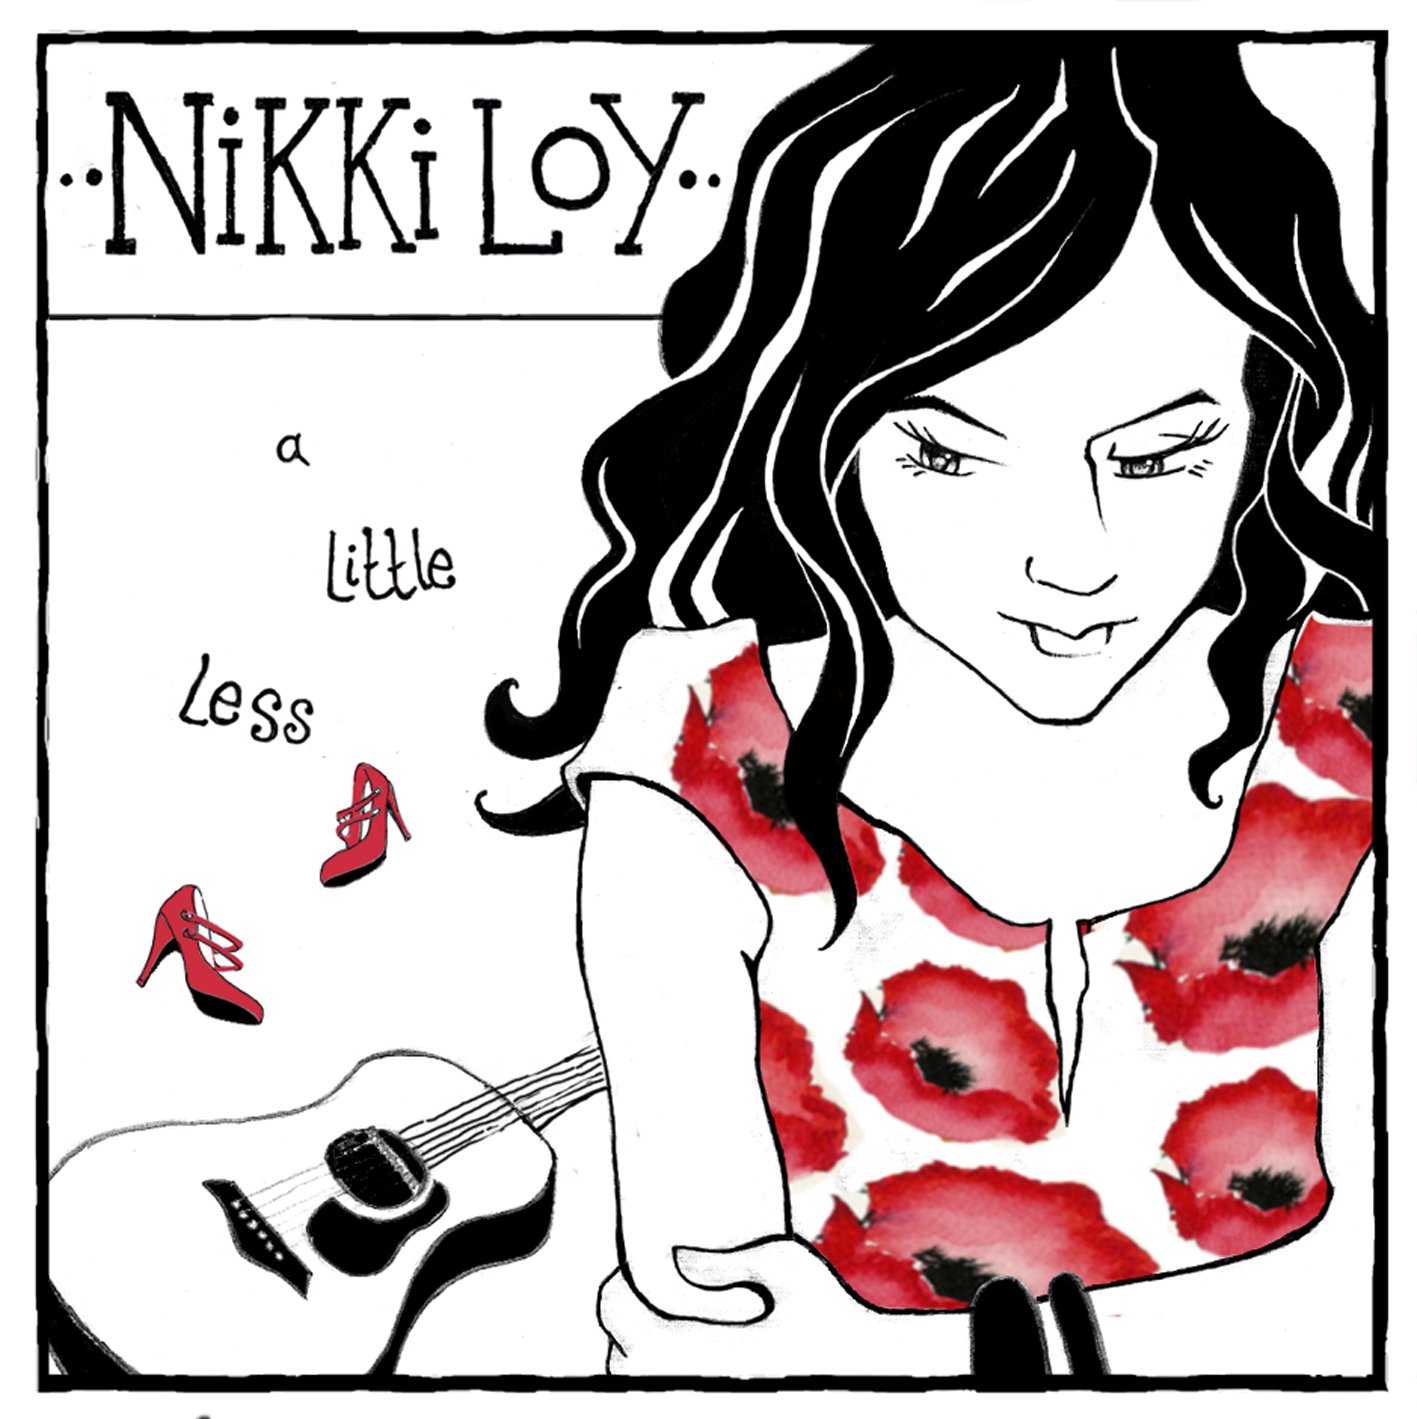 Nikki little